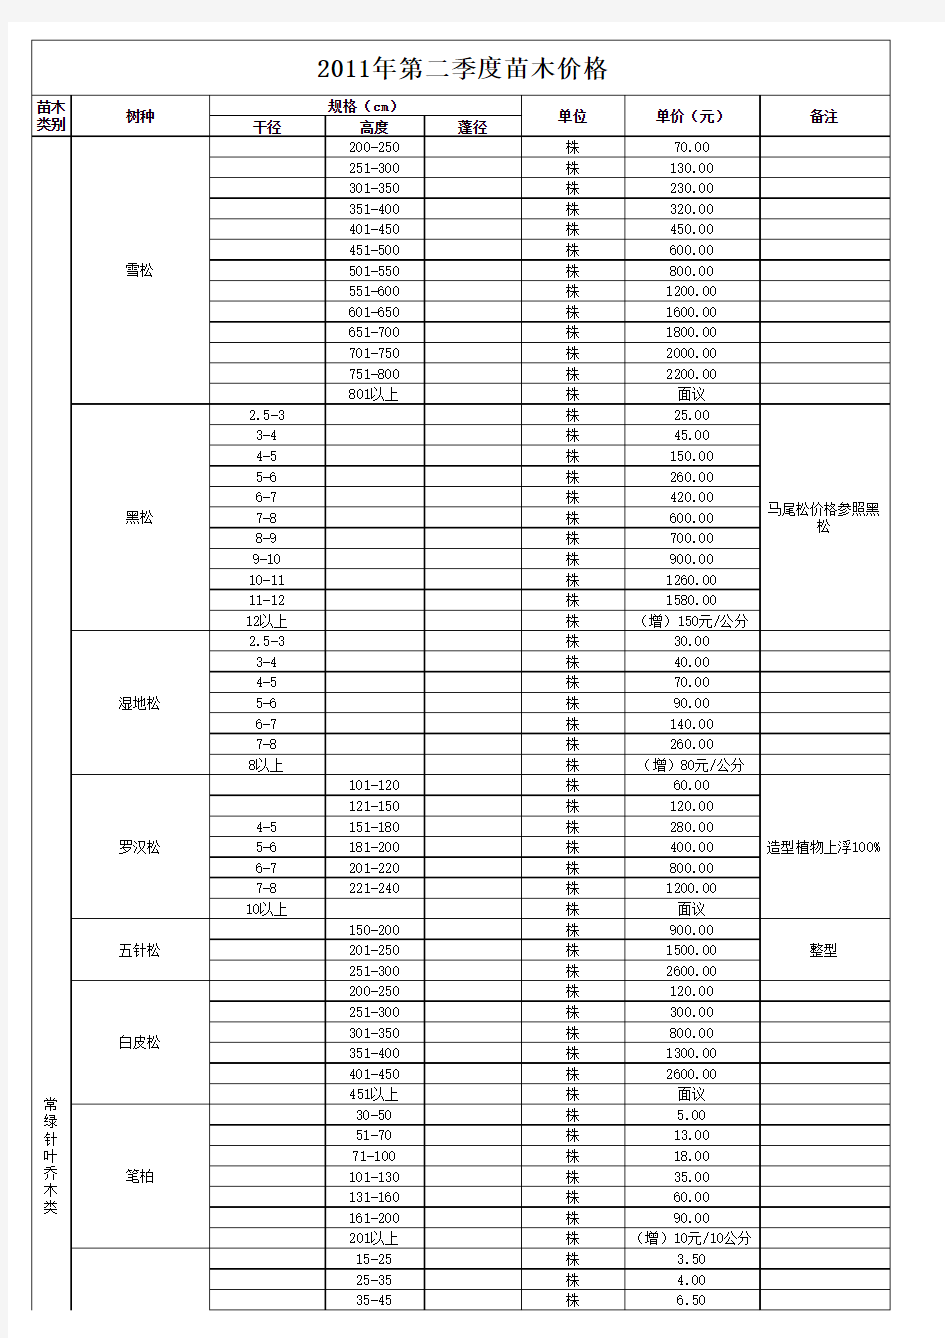 2011-2012年苗木价格表